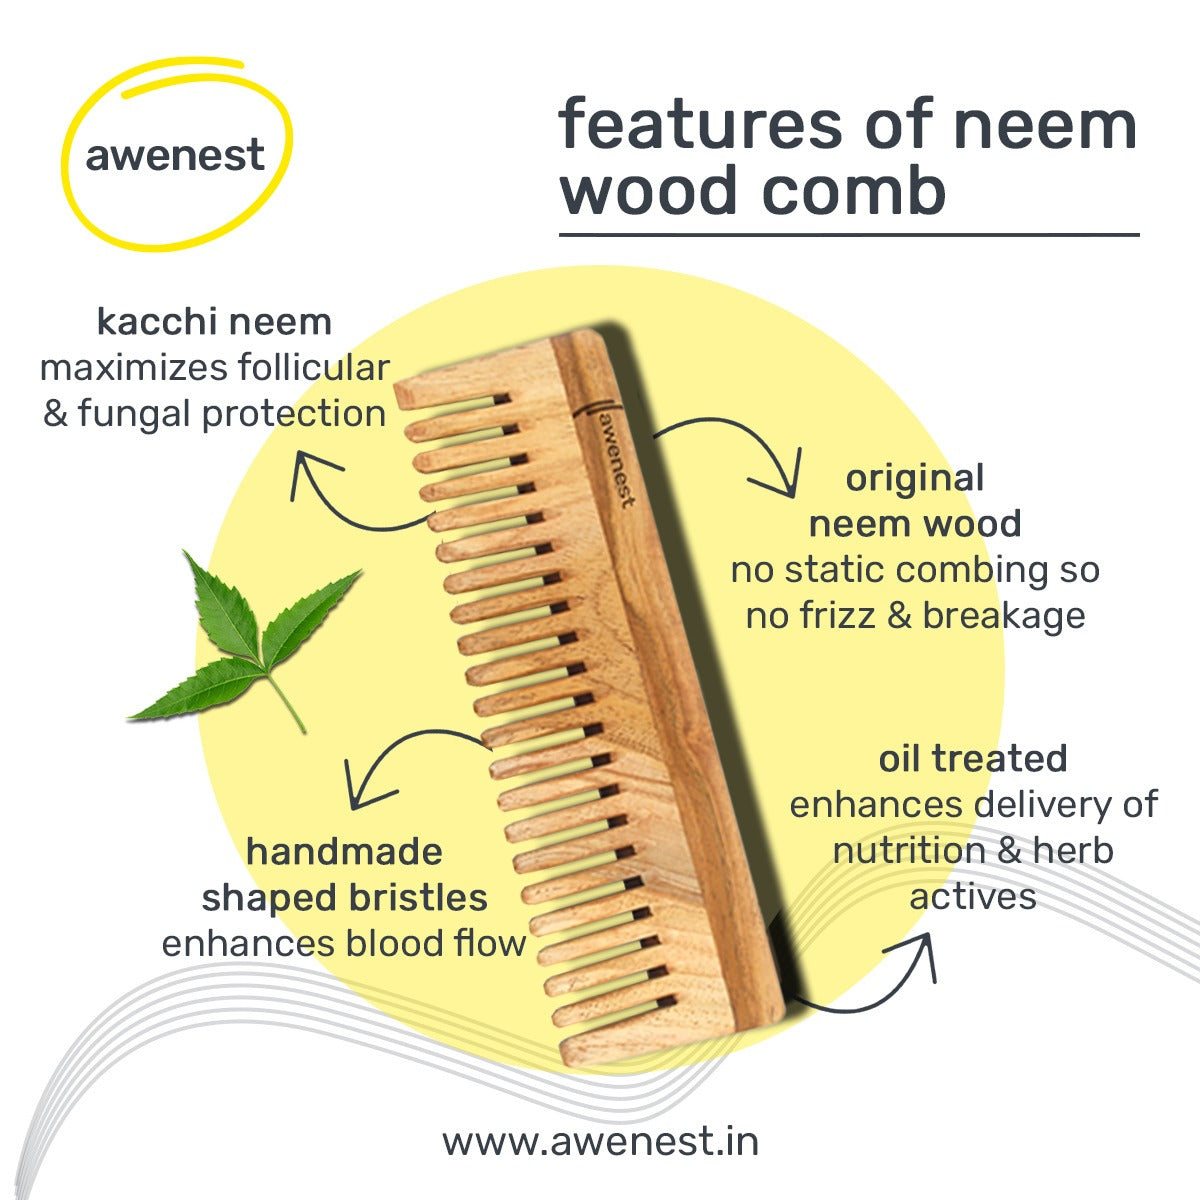 Kacchi neem wooden comb